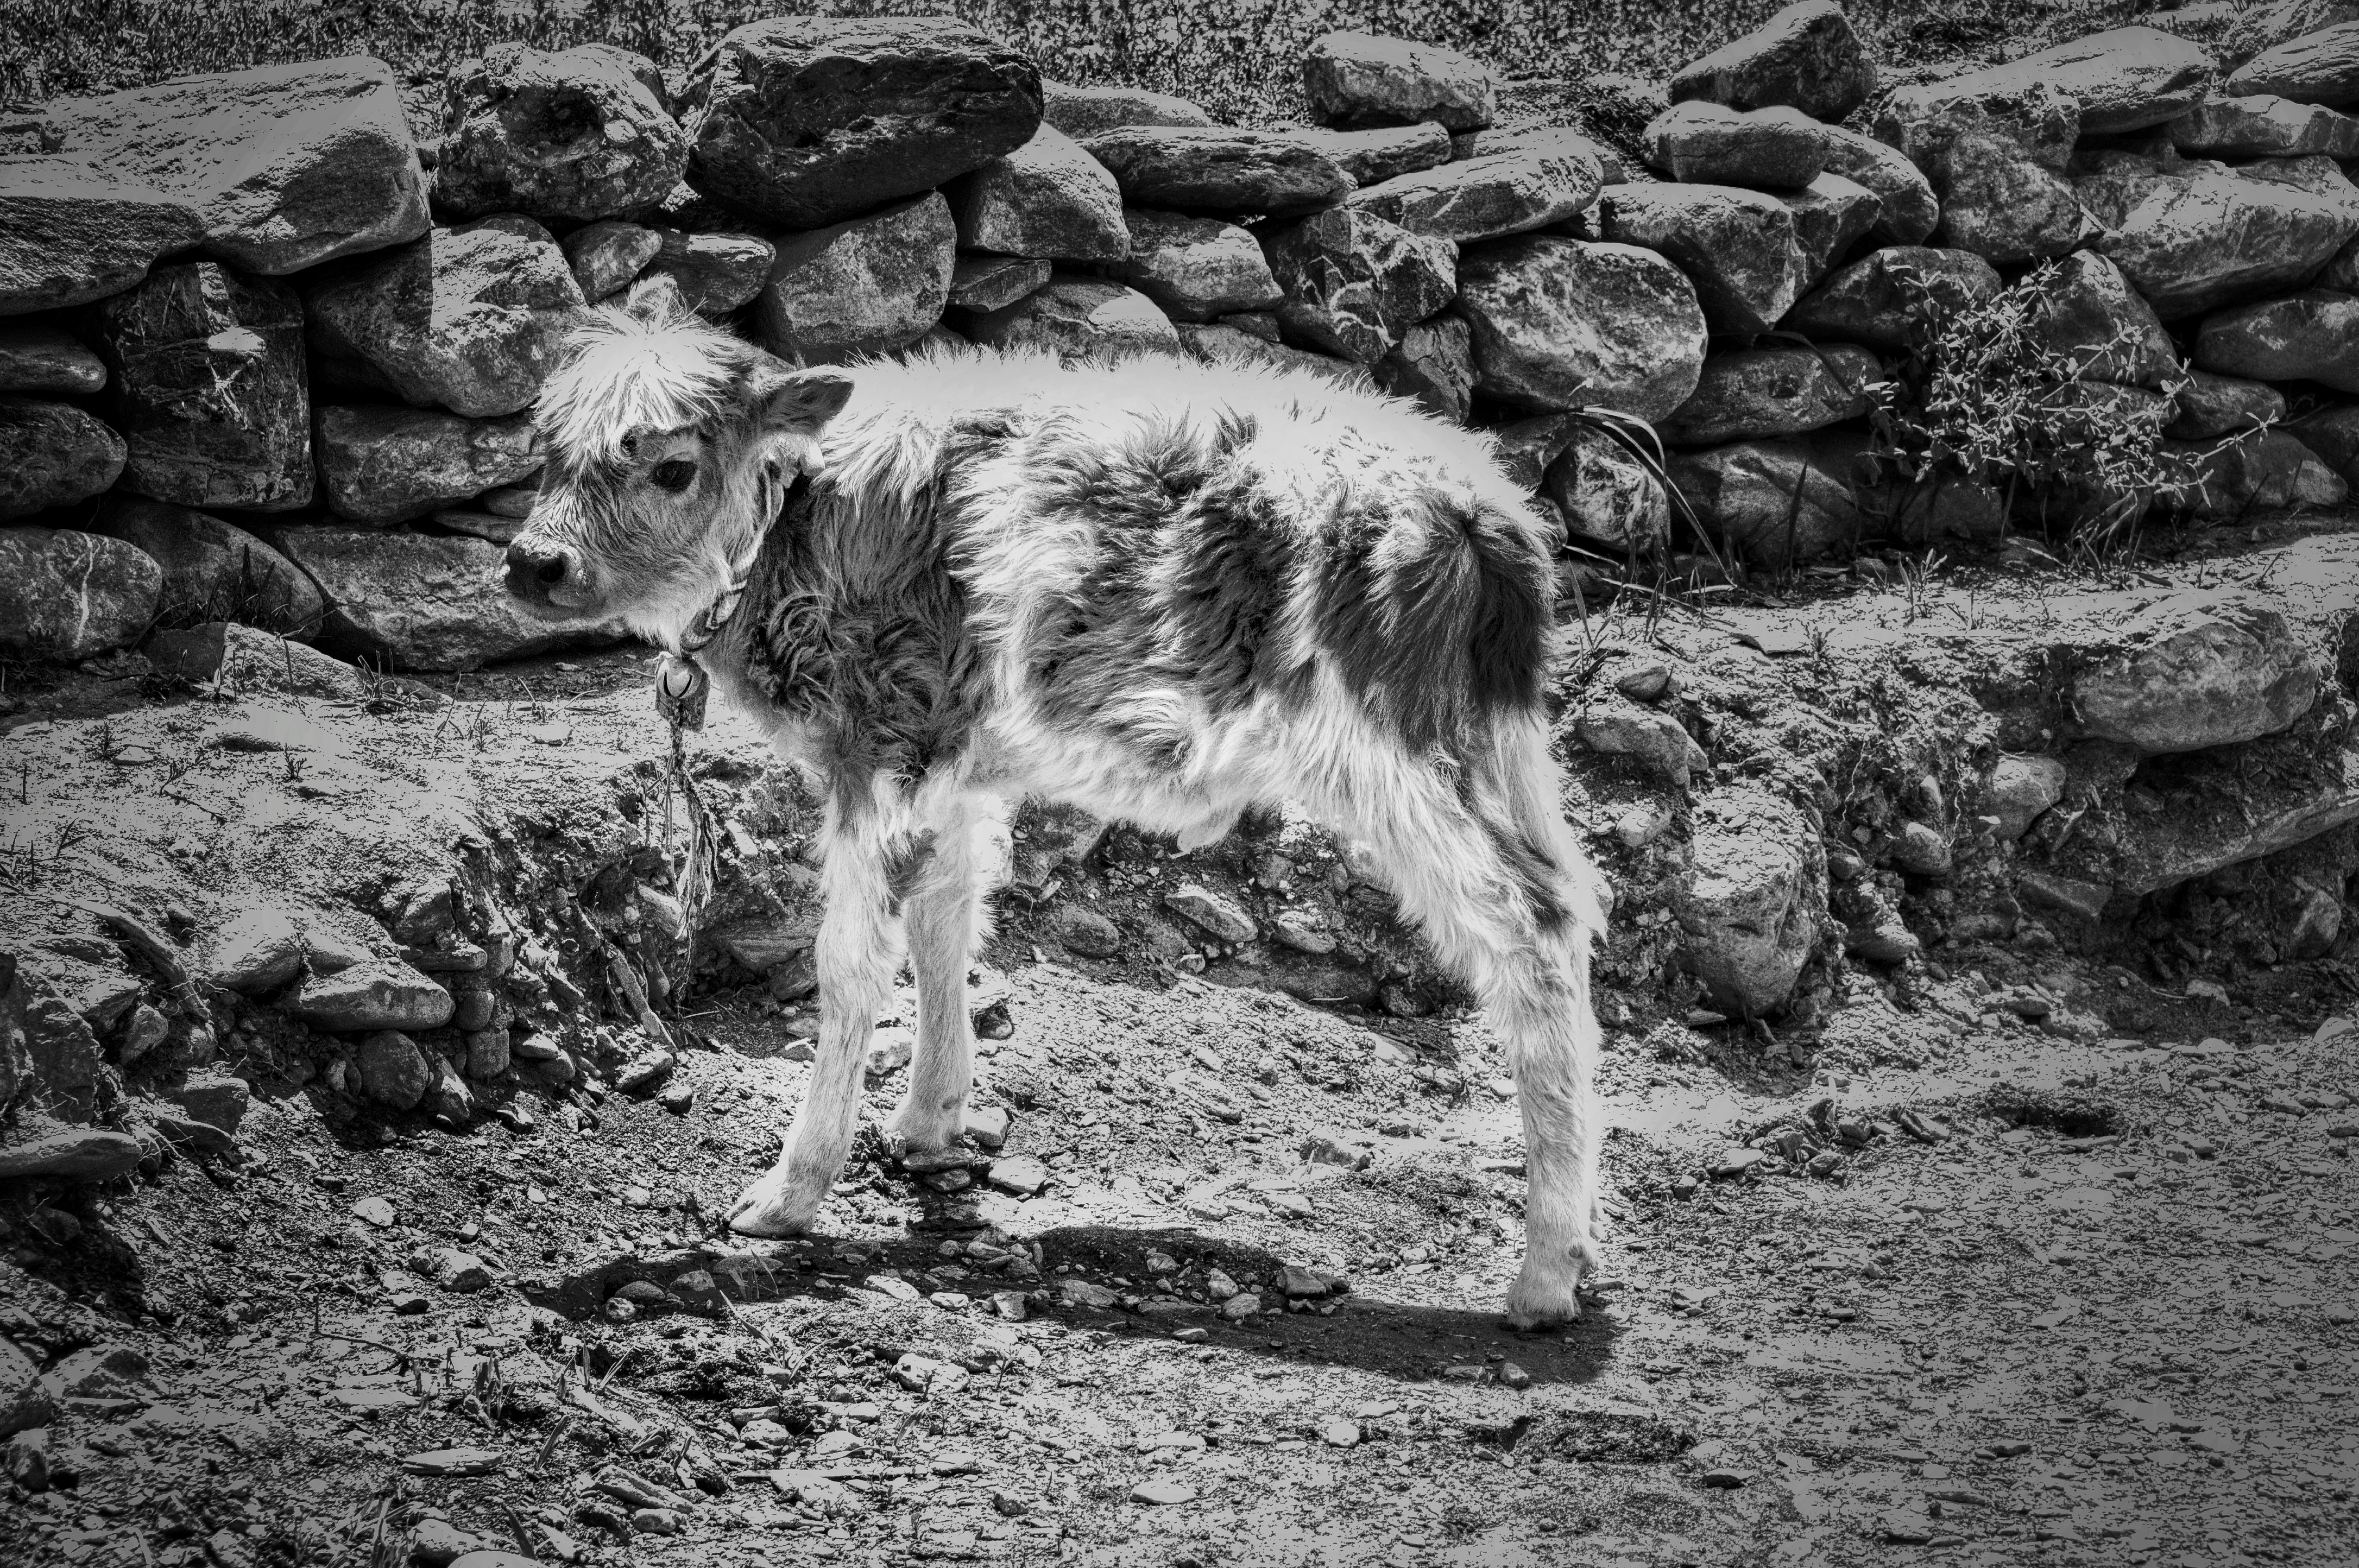 Calf in Ladakh, India